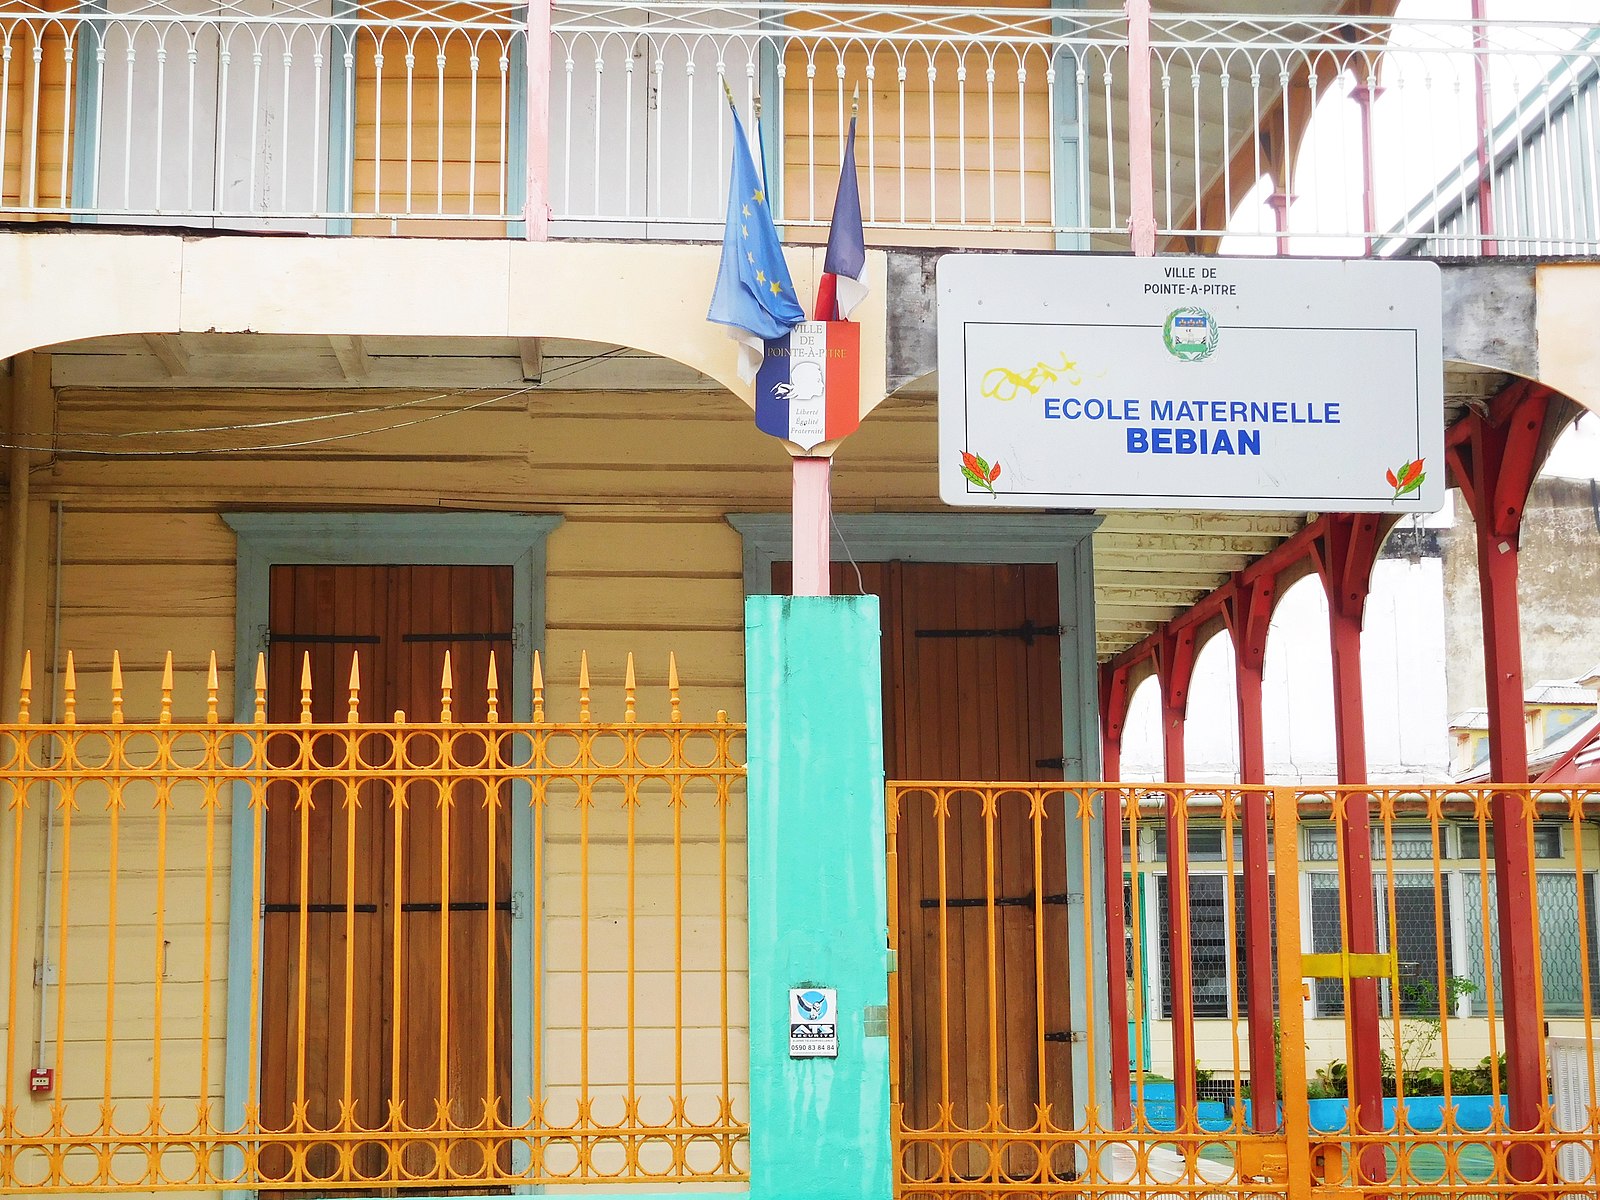     Les écoles maternelles et élémentaires rouvrent à Pointe-à-Pitre

